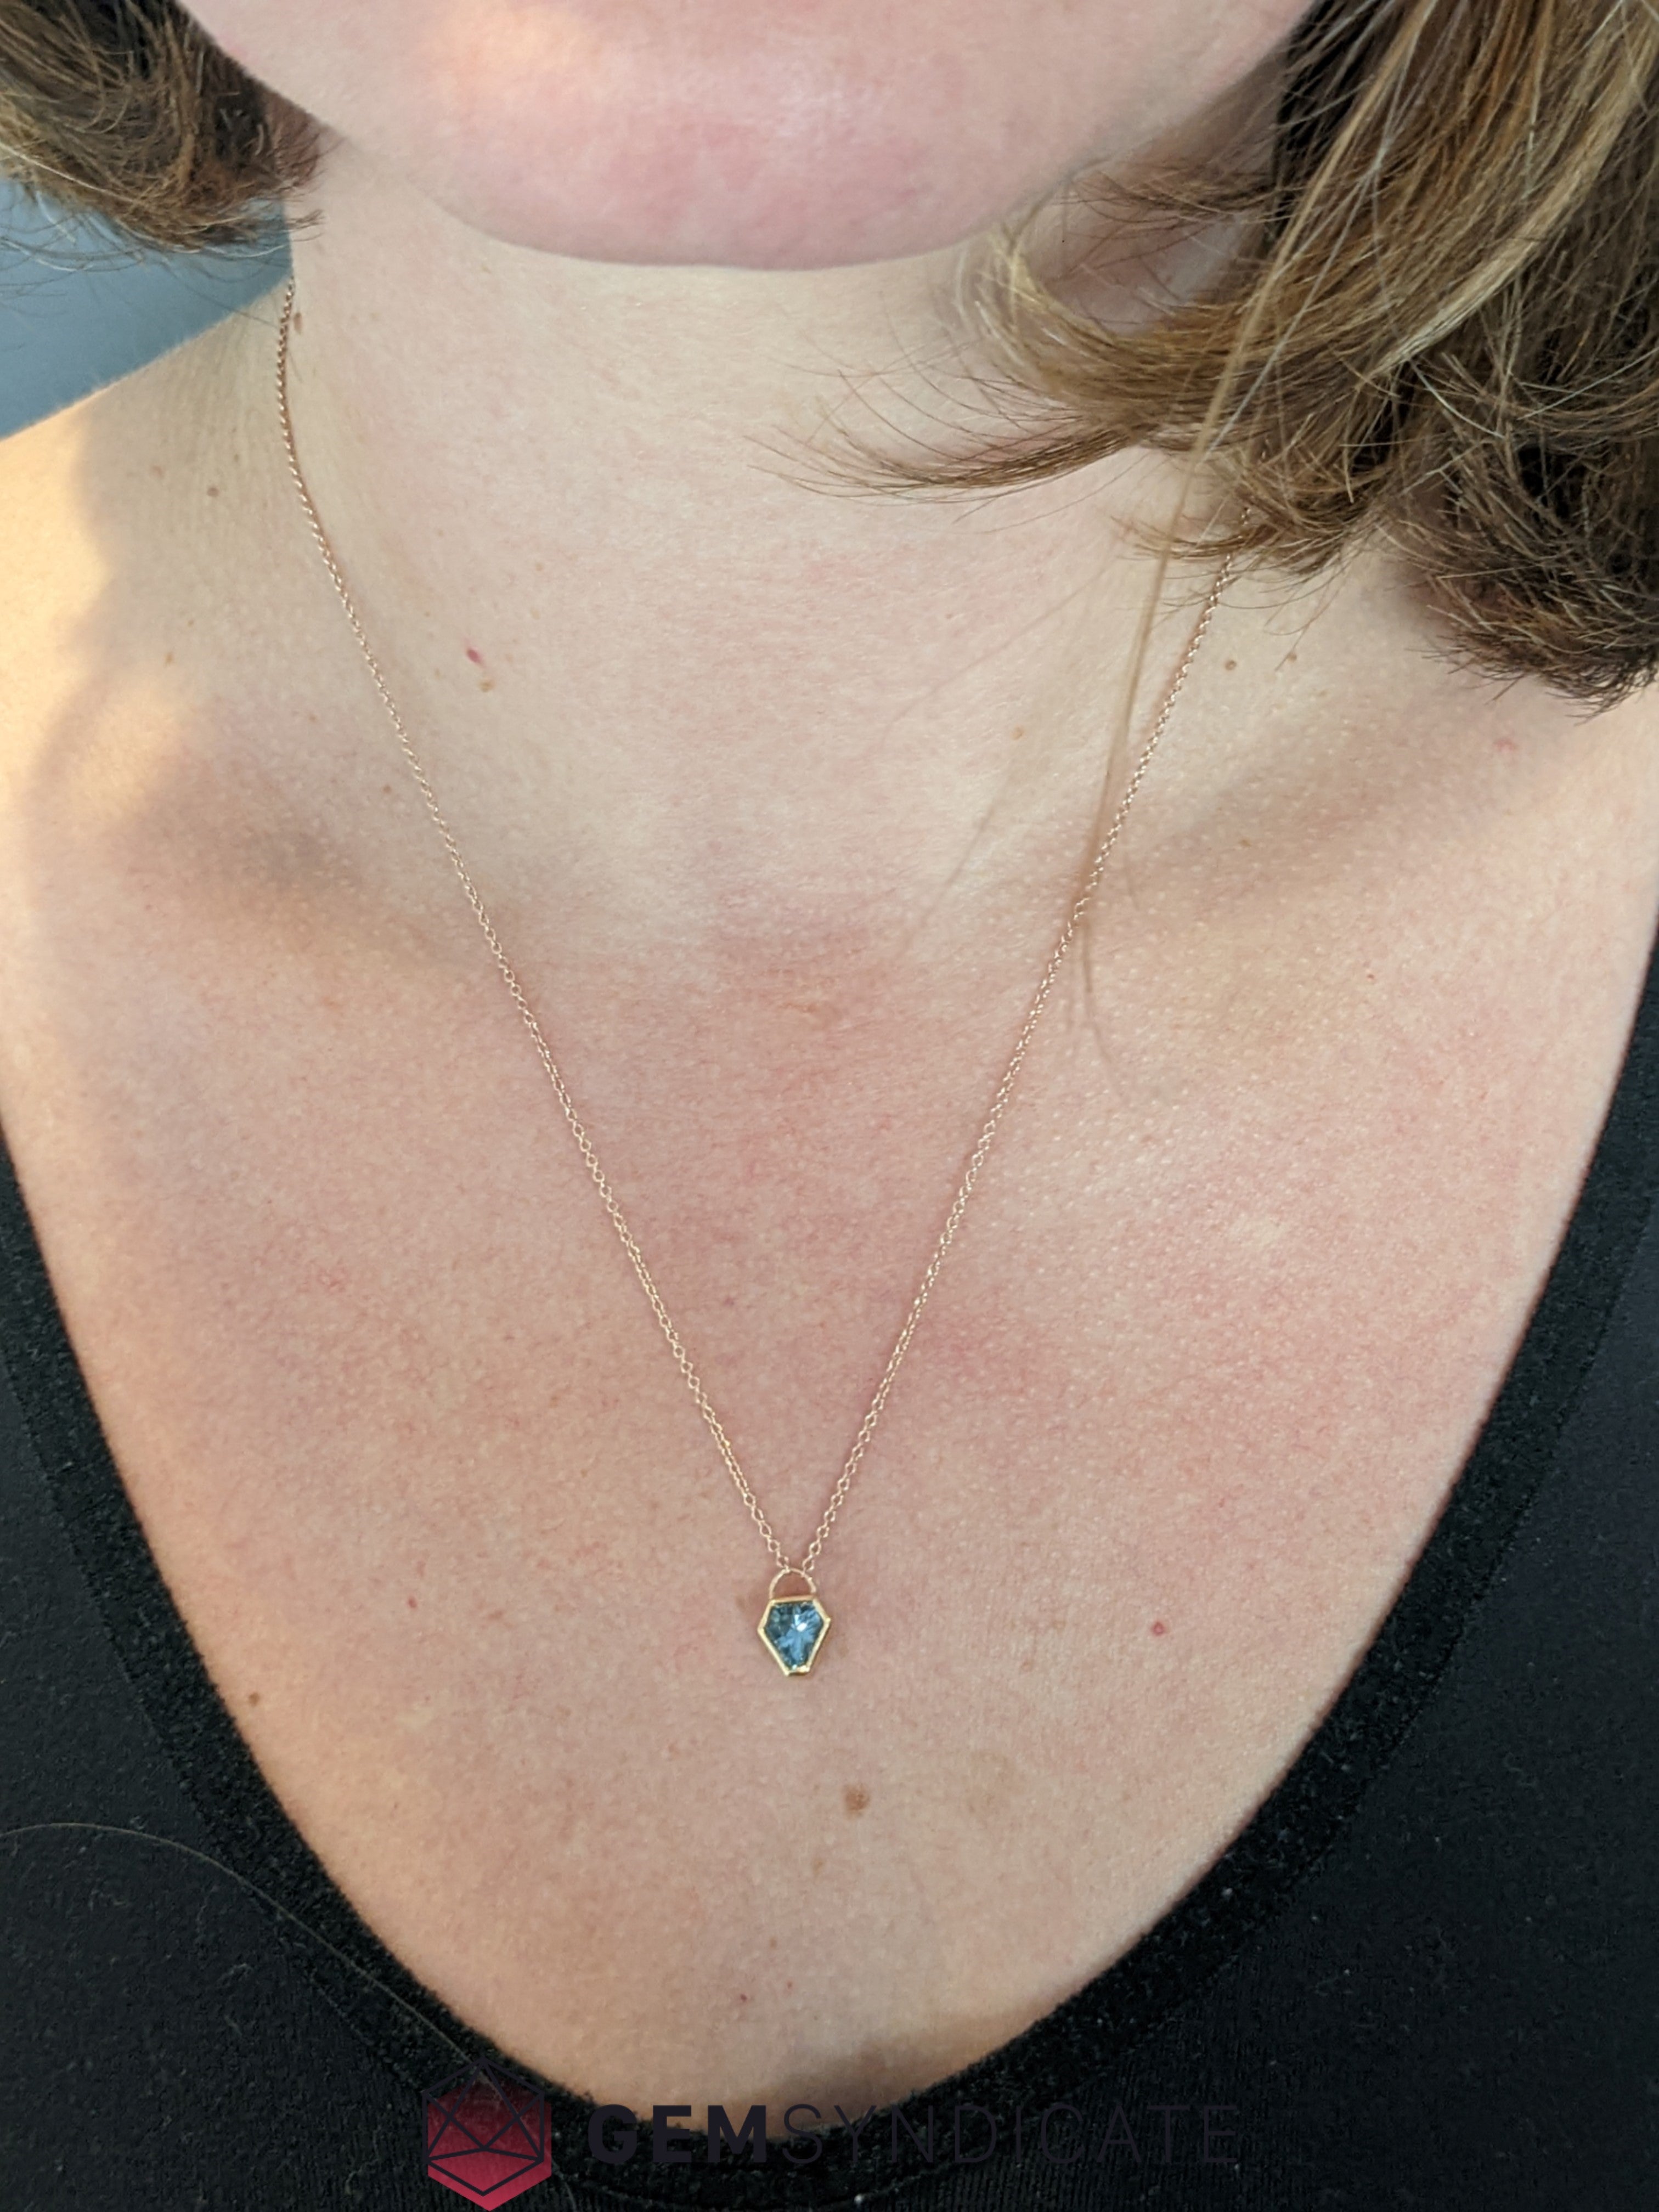 Elegant Teal Sapphire Necklace in 14k Rose Gold